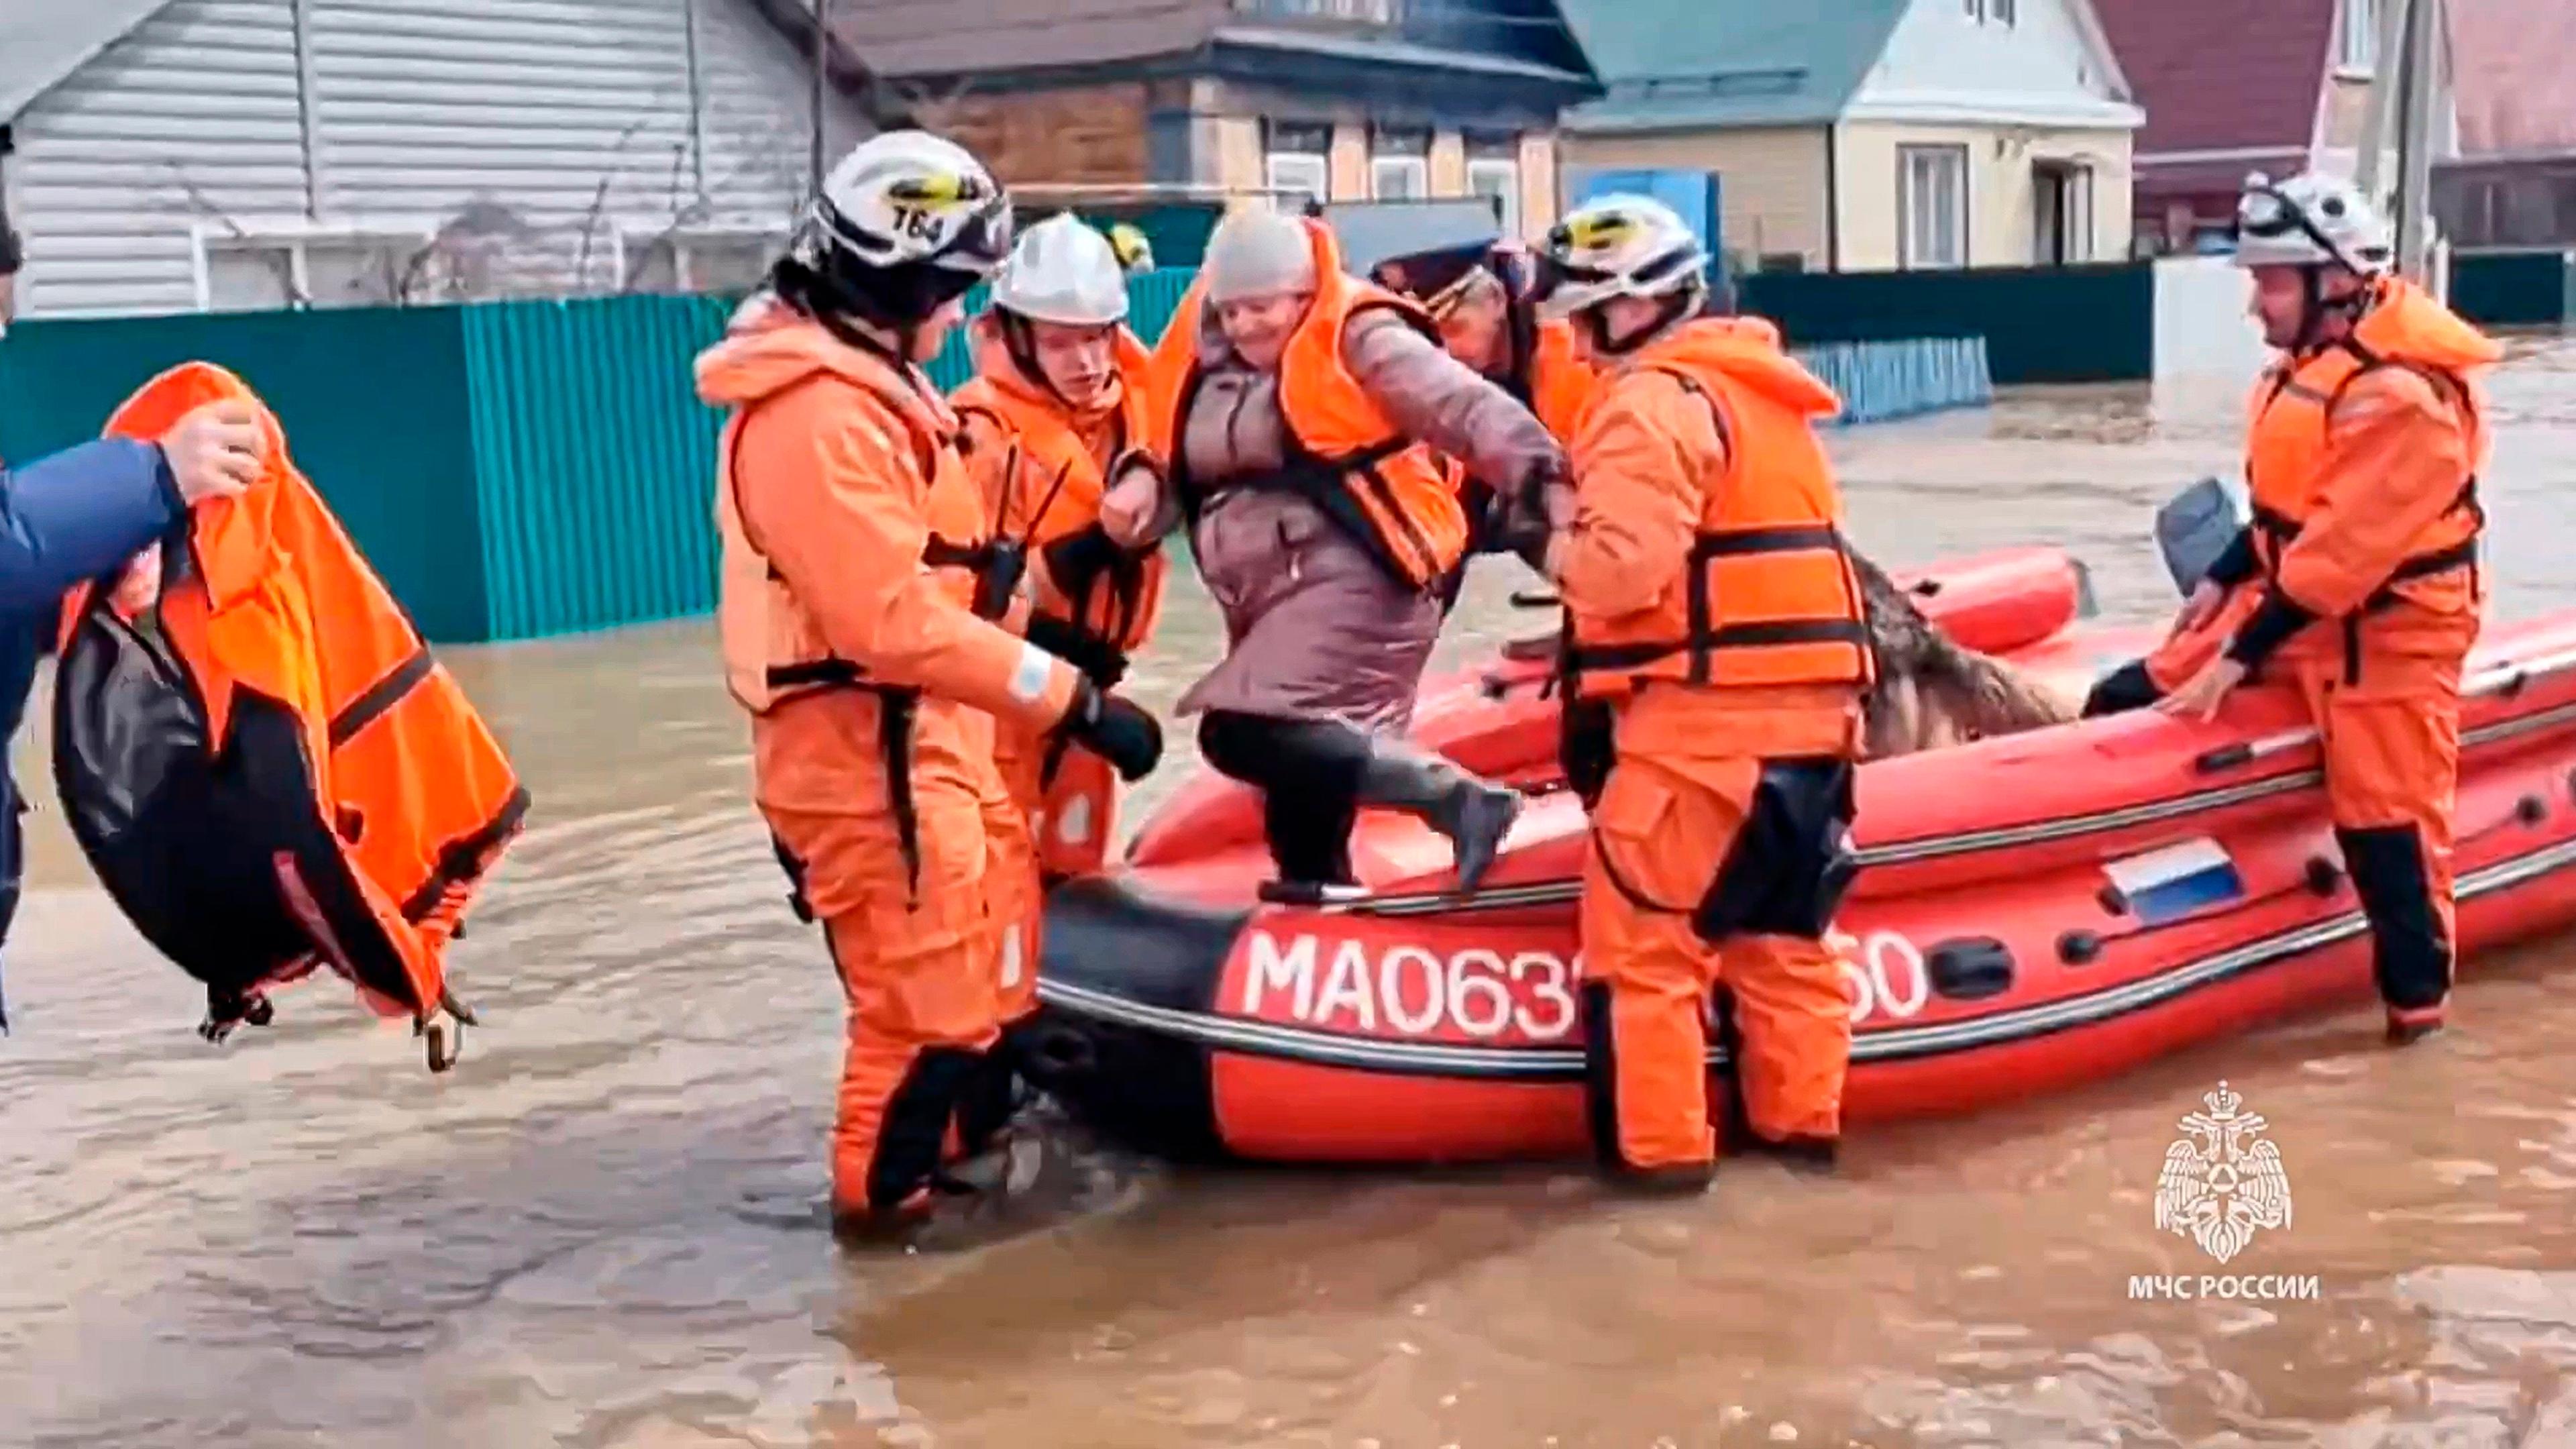 Rettungsboot in russischem Hochwassergebiet